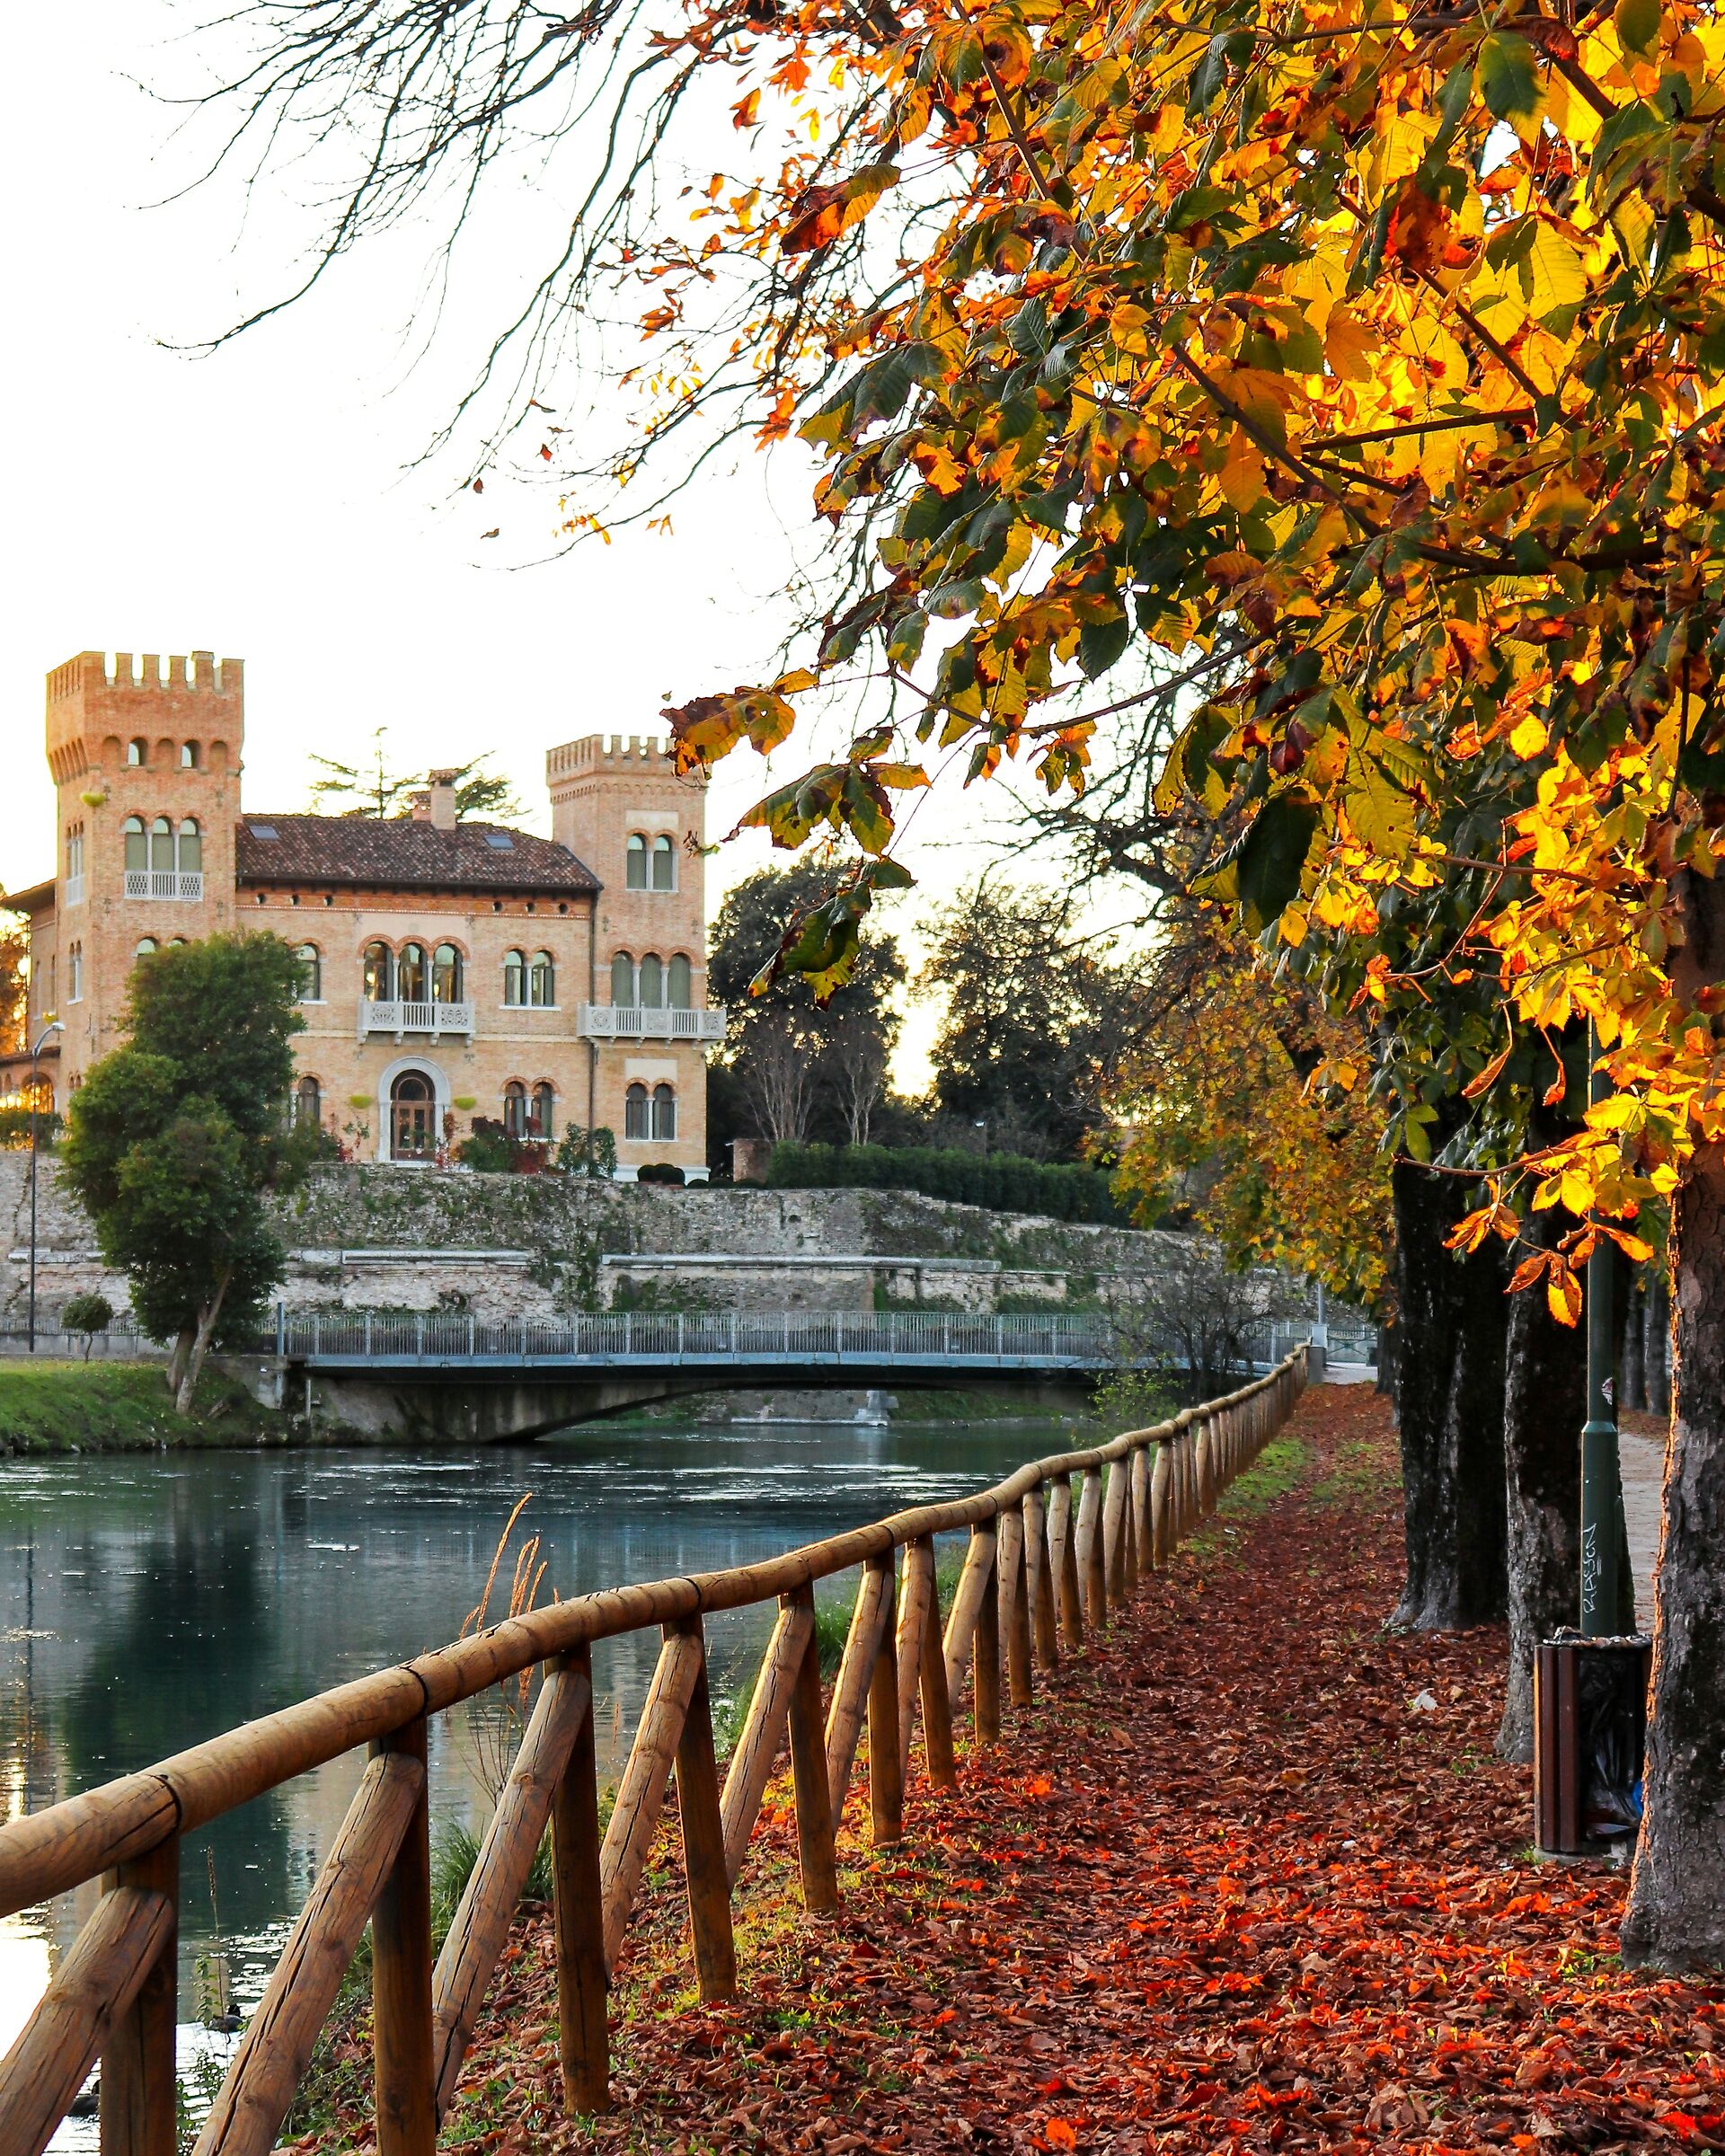 Autumn in Treviso...